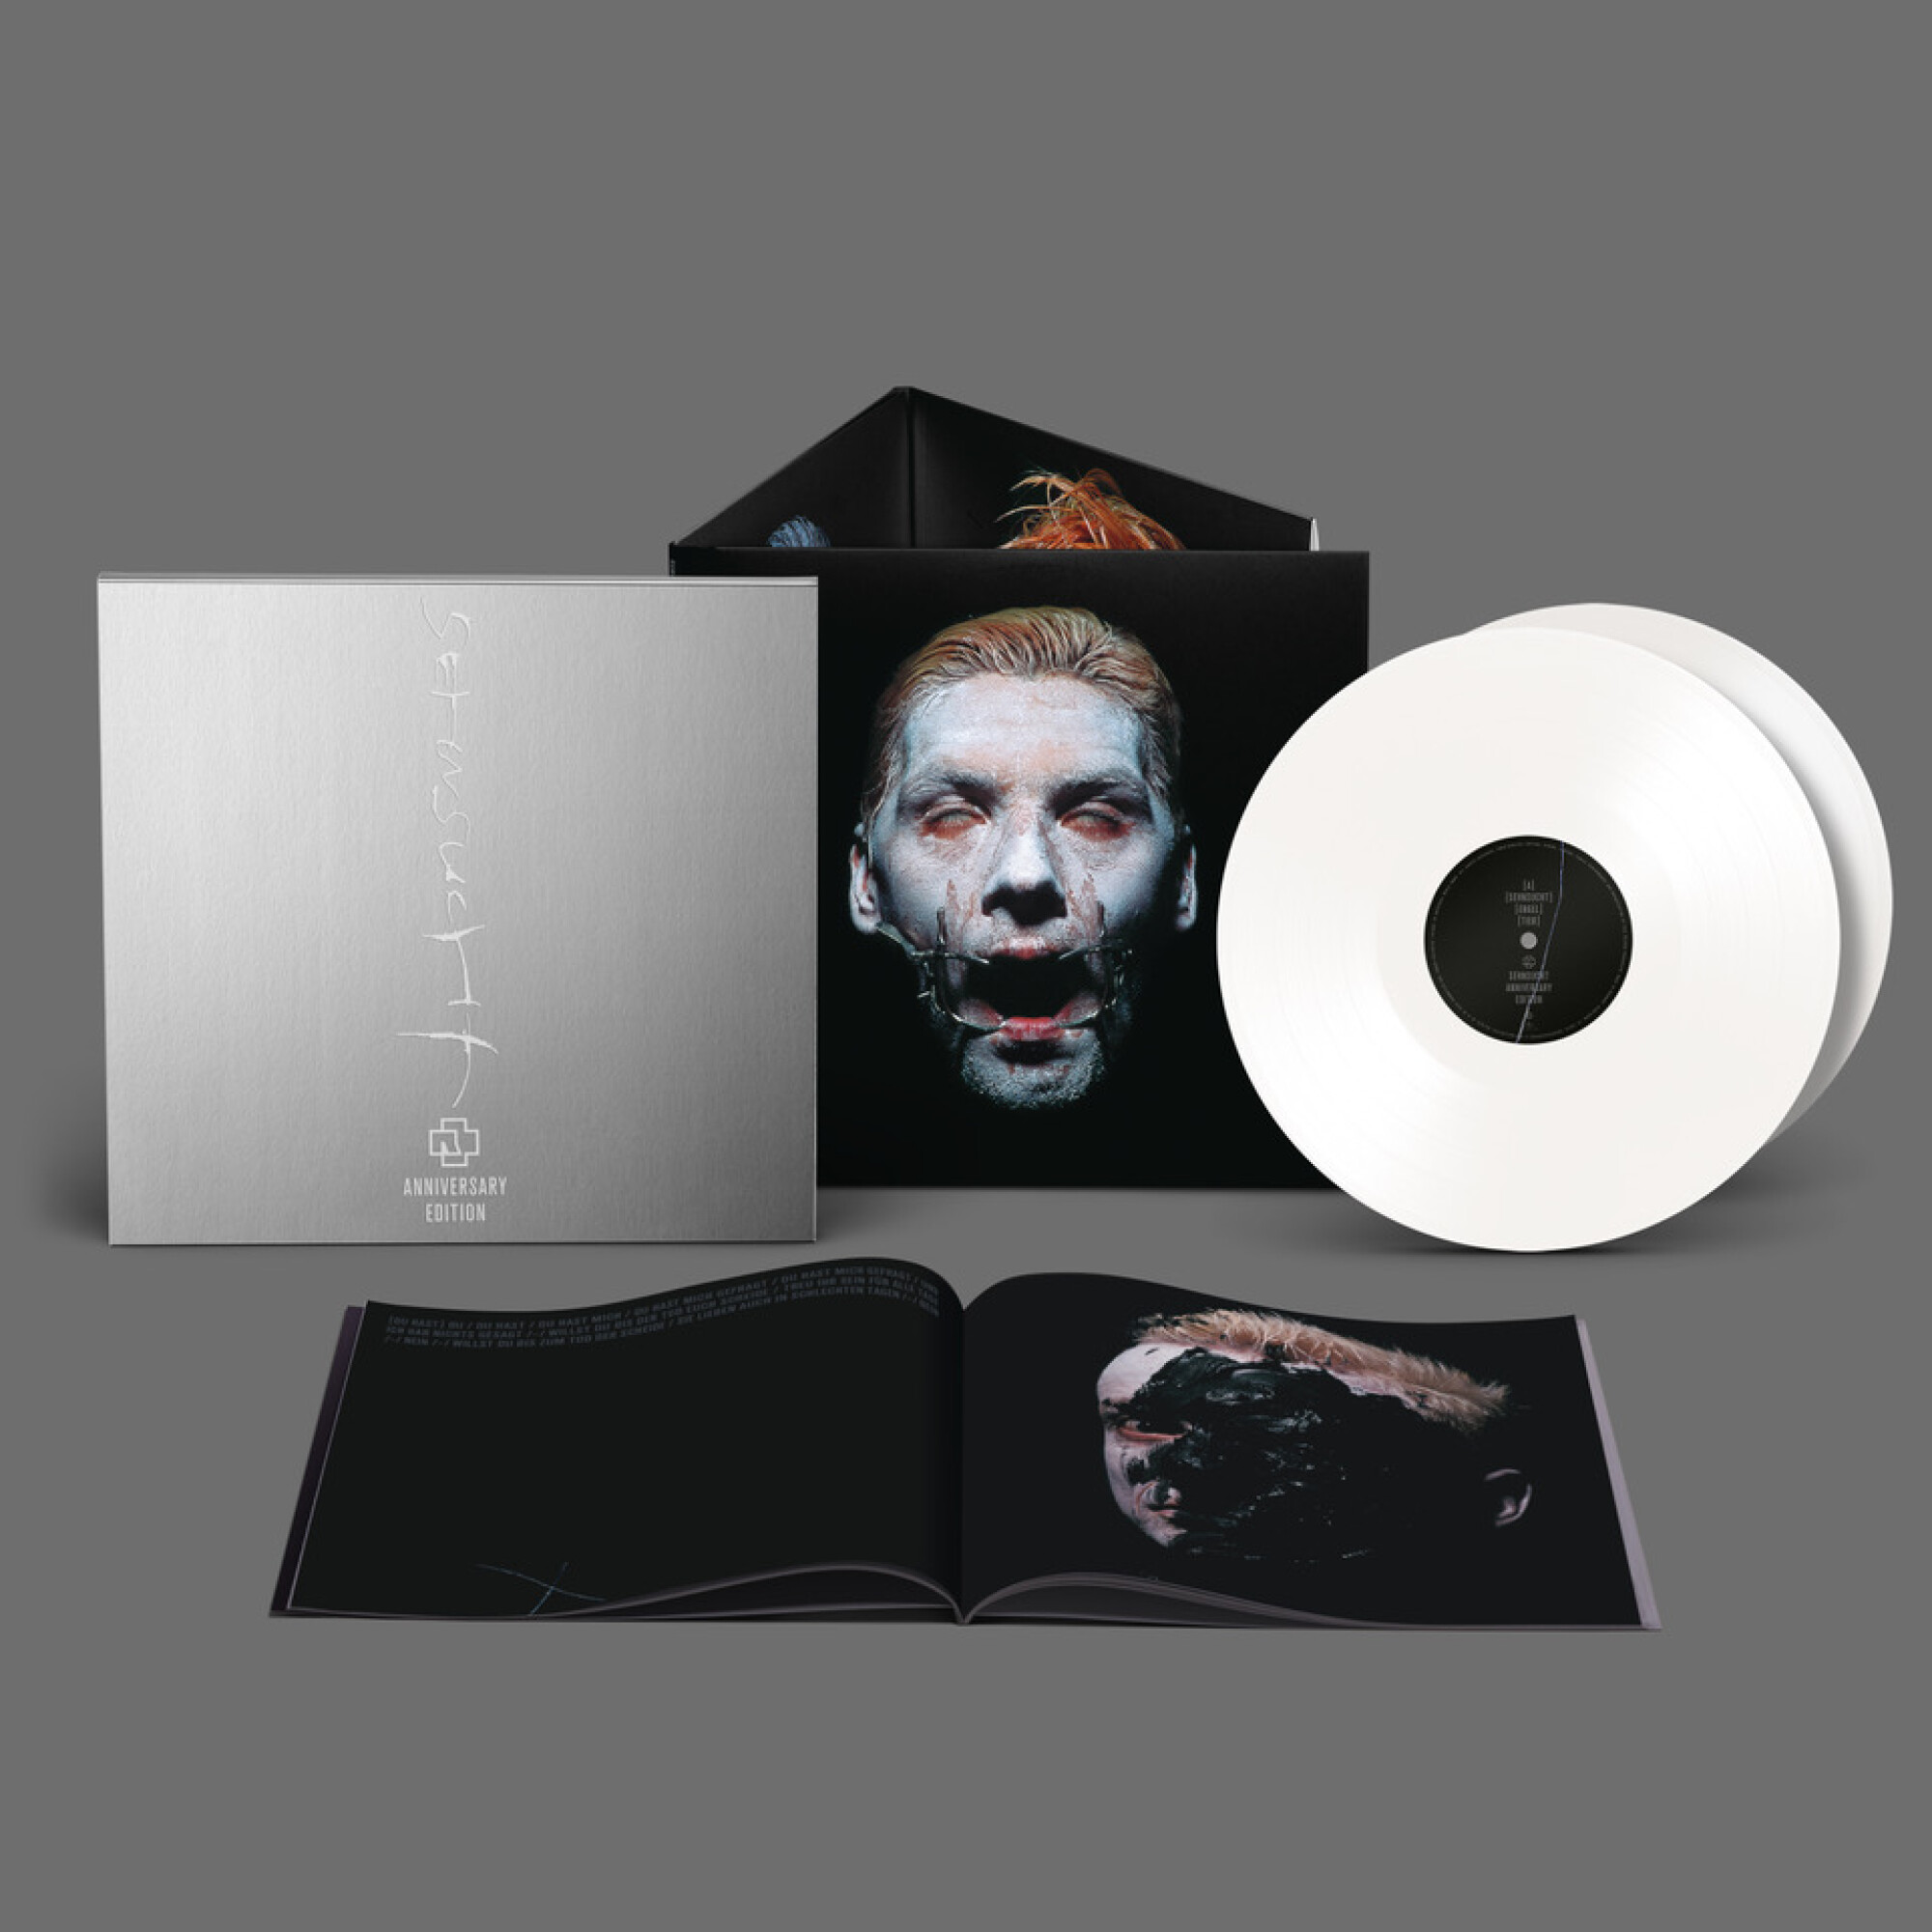 Rammstein Album ”Sehnsucht” (Anniversary Edition – Exclusive white